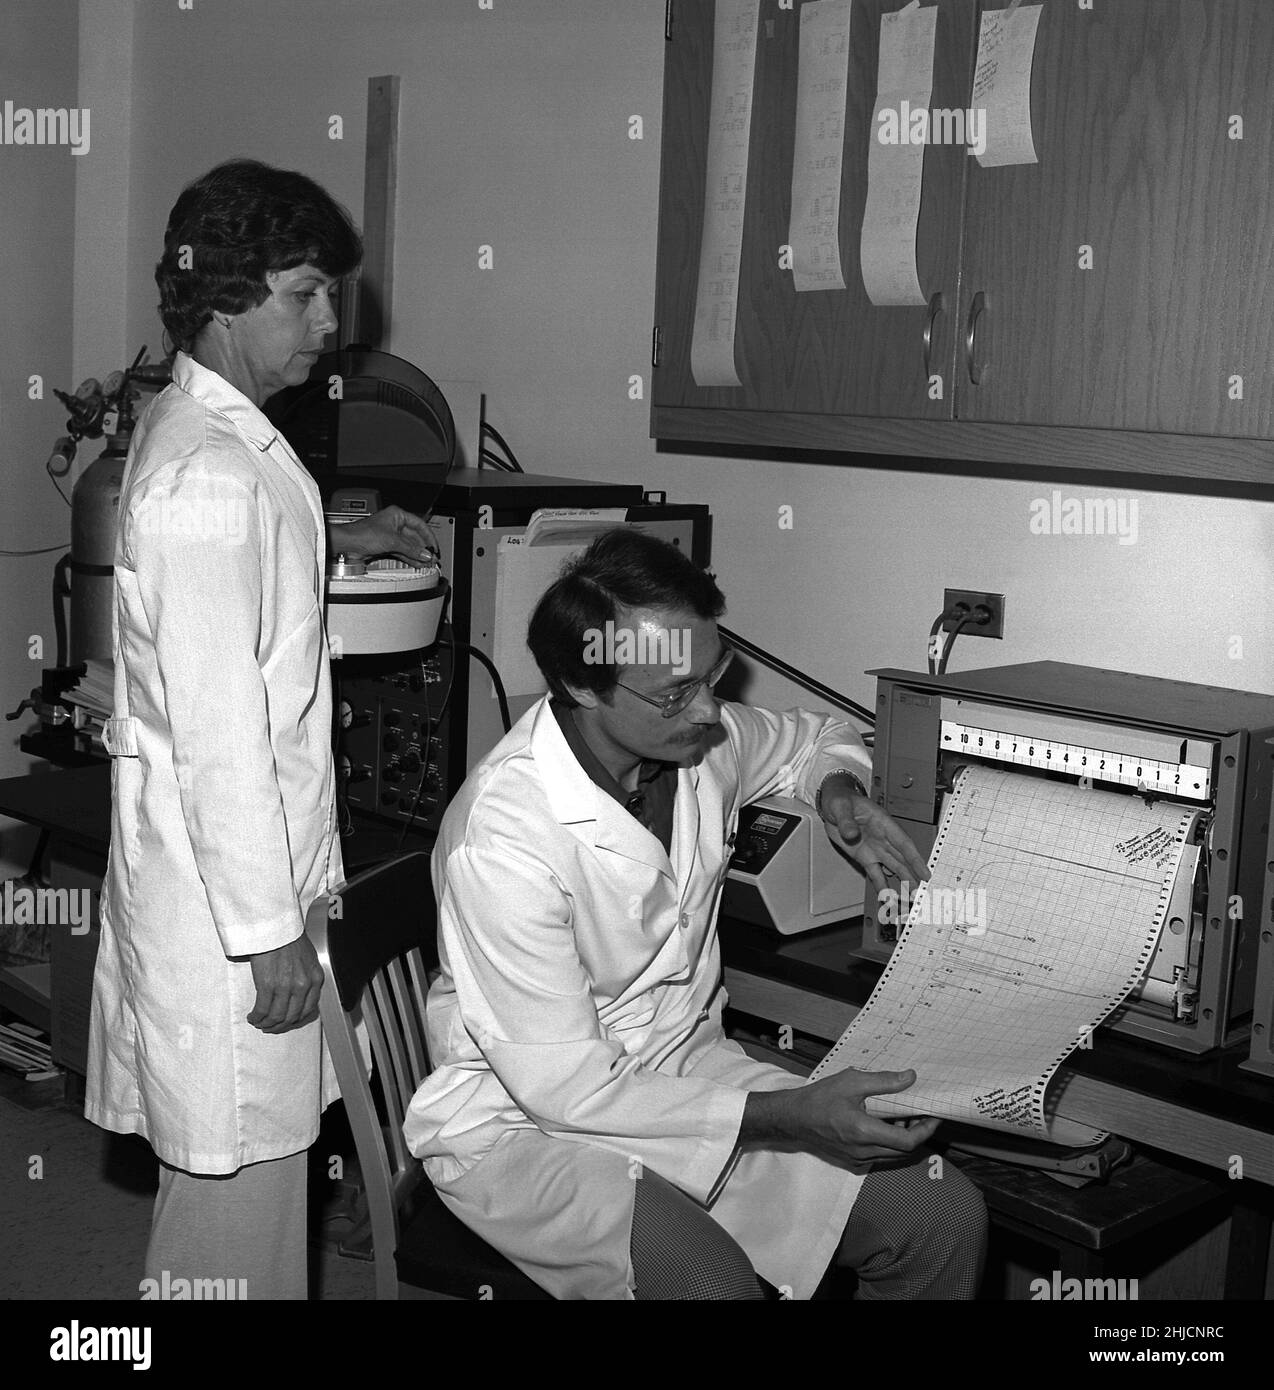 Dieses Bild aus dem Jahr 1978 zeigt die Wissenschaftler Charlotte Patton und Scott Johnson, die ein Gaschromatographie-Profil der zellulären Fettsäuren untersuchen, die von Legionella pneumophila-Bakterien produziert werden. Als Erreger der Legionärskrankheit wurde dieses Bakterium entdeckt, als es 1976 auf einer Tagung der American Legion in Philadelphia für einen Ausbruch verantwortlich wurde. Stockfoto